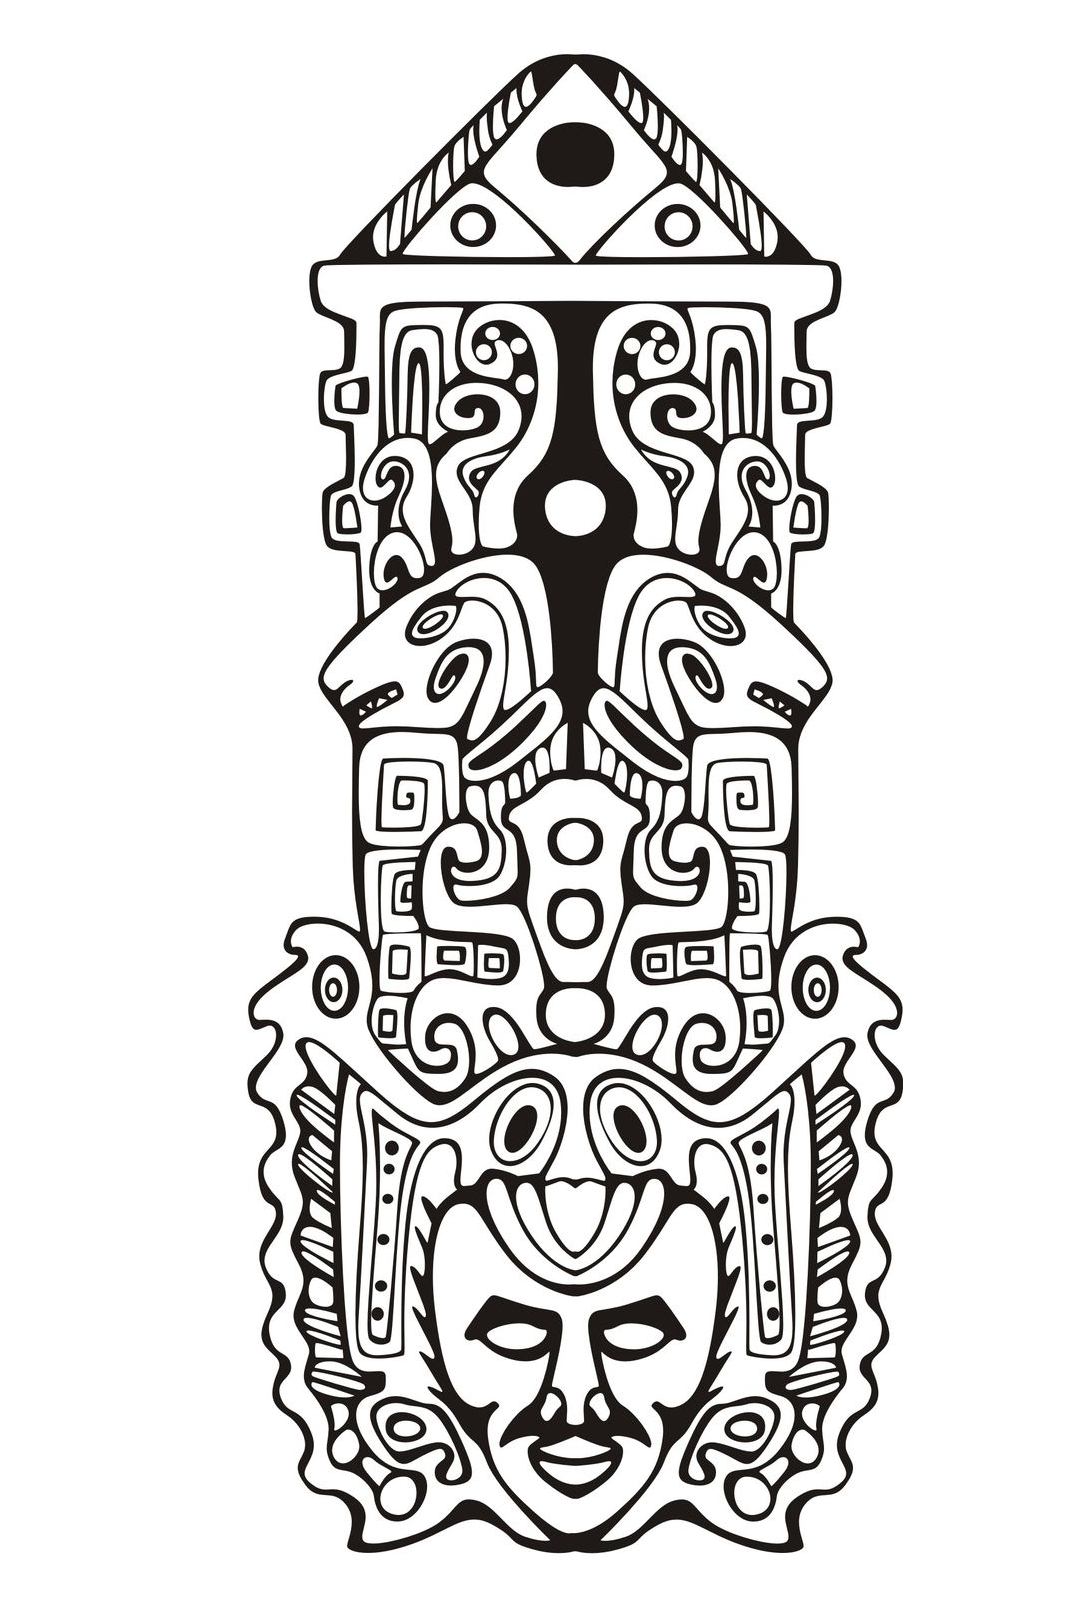 Disegni da colorare per adulti : Maya, Aztechi e Incas - 12, Artista : Rocich   Fonte : 123rf